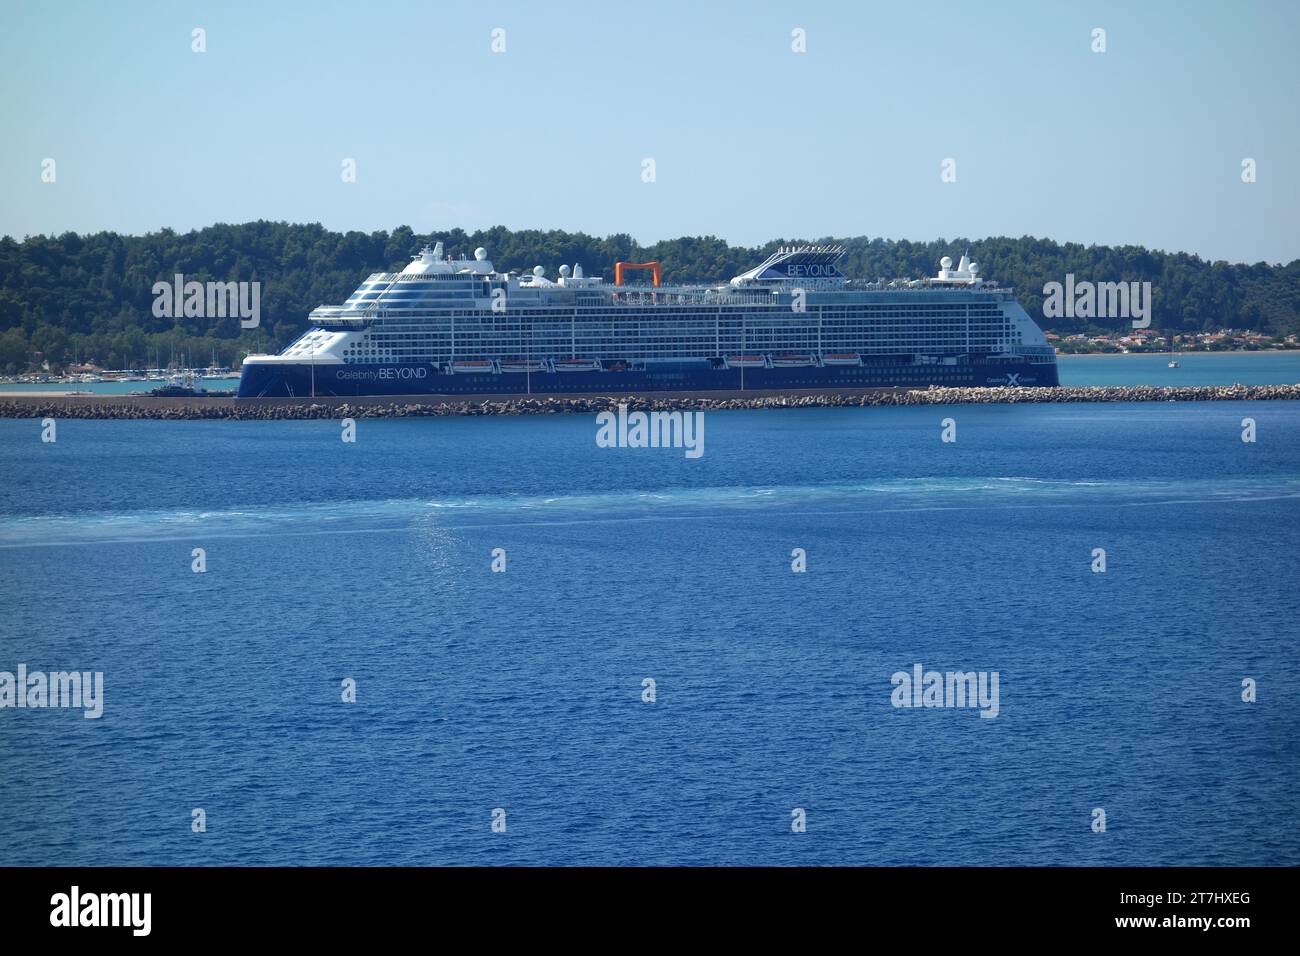 Celebrity Cruises 'Celebrity Beyond' un grand bateau de croisière de classe Edge amarré dans le port de Katakolon, Grèce, eu. Banque D'Images